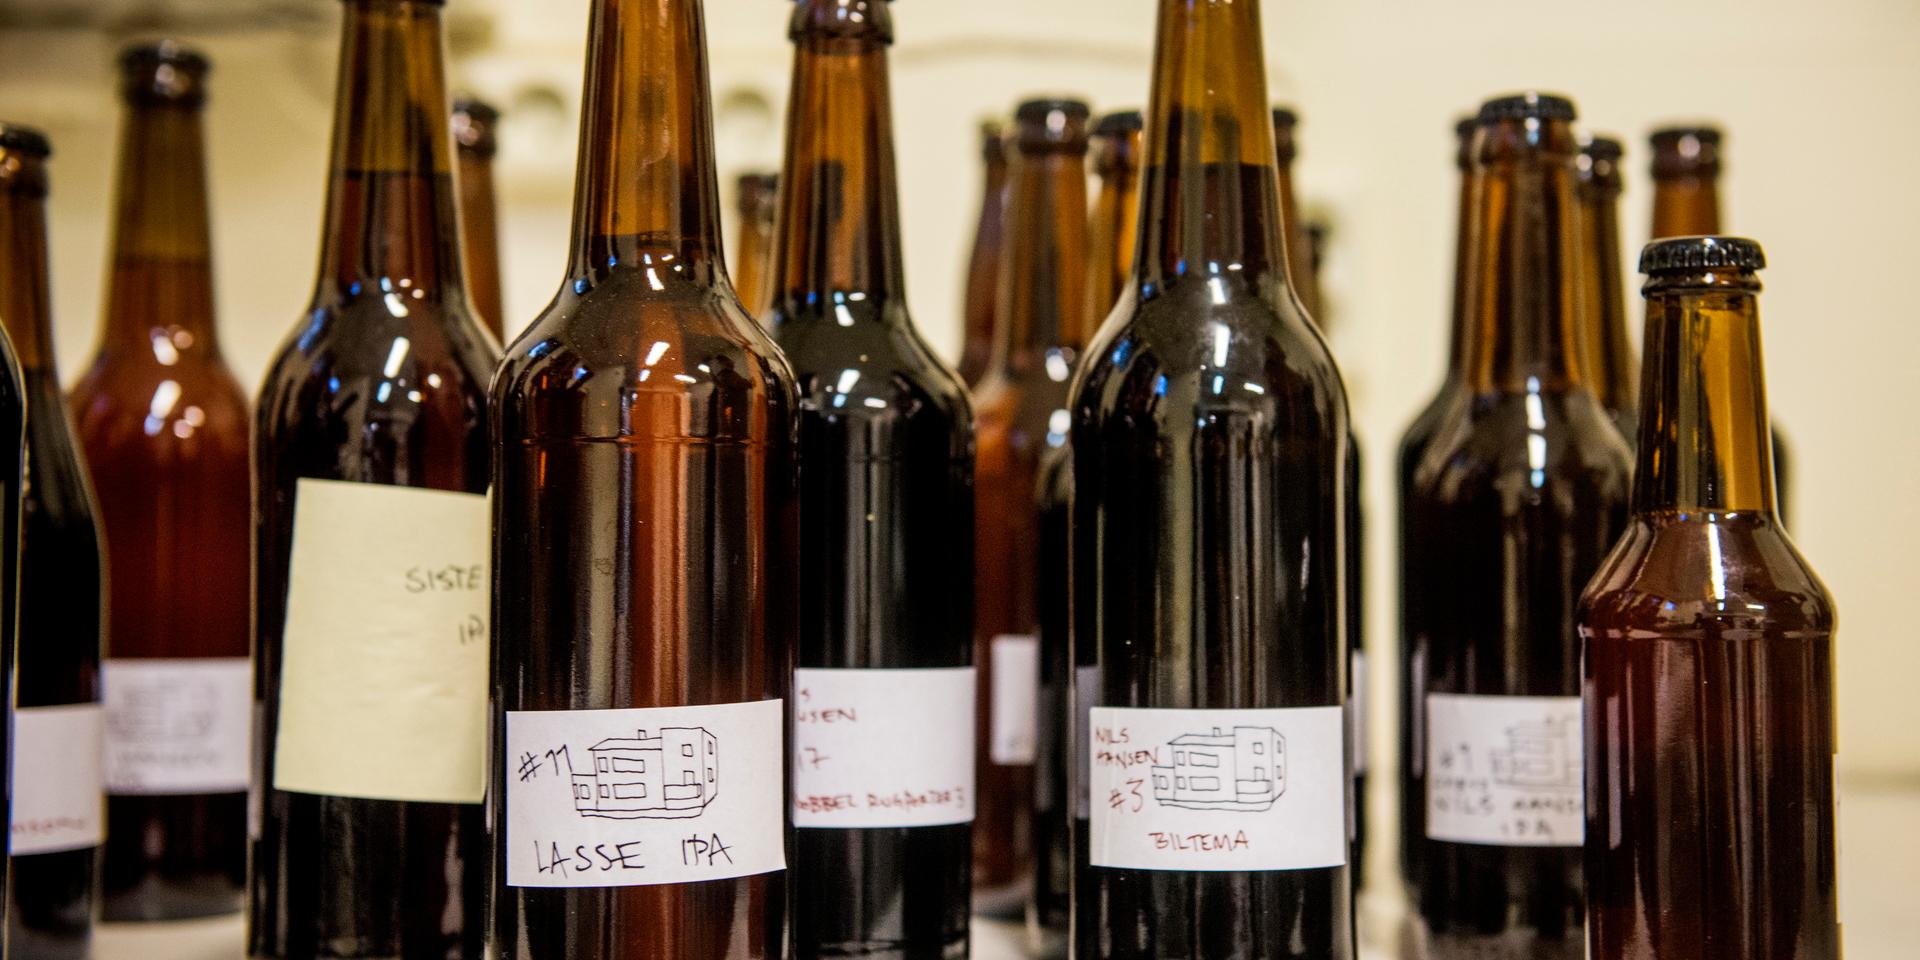 ”Att tillåta gårdsförsäljning av alkohol skulle vara ett steg i en sund liberal riktning”, skriver Sivert Aronsson.